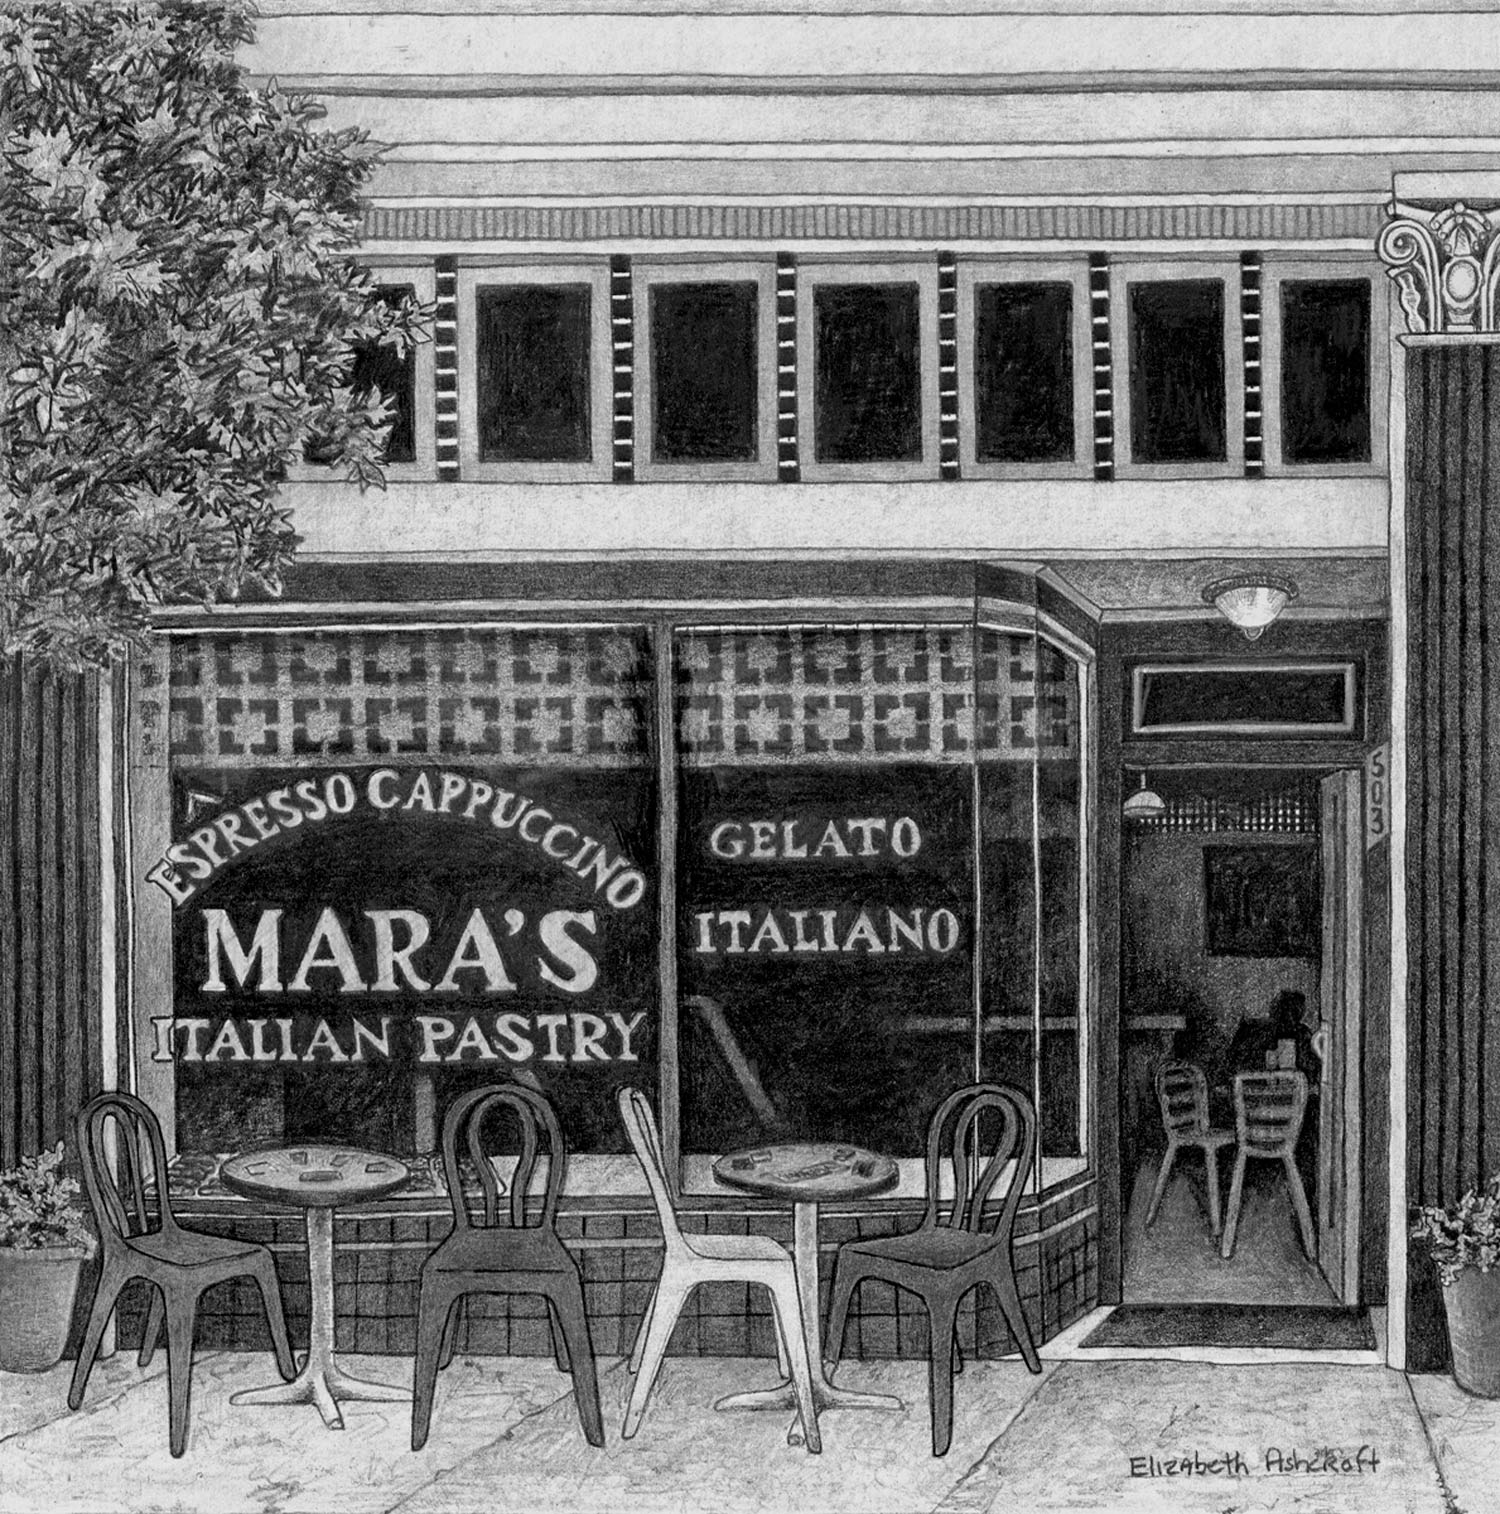 Mara's Italian Pastry